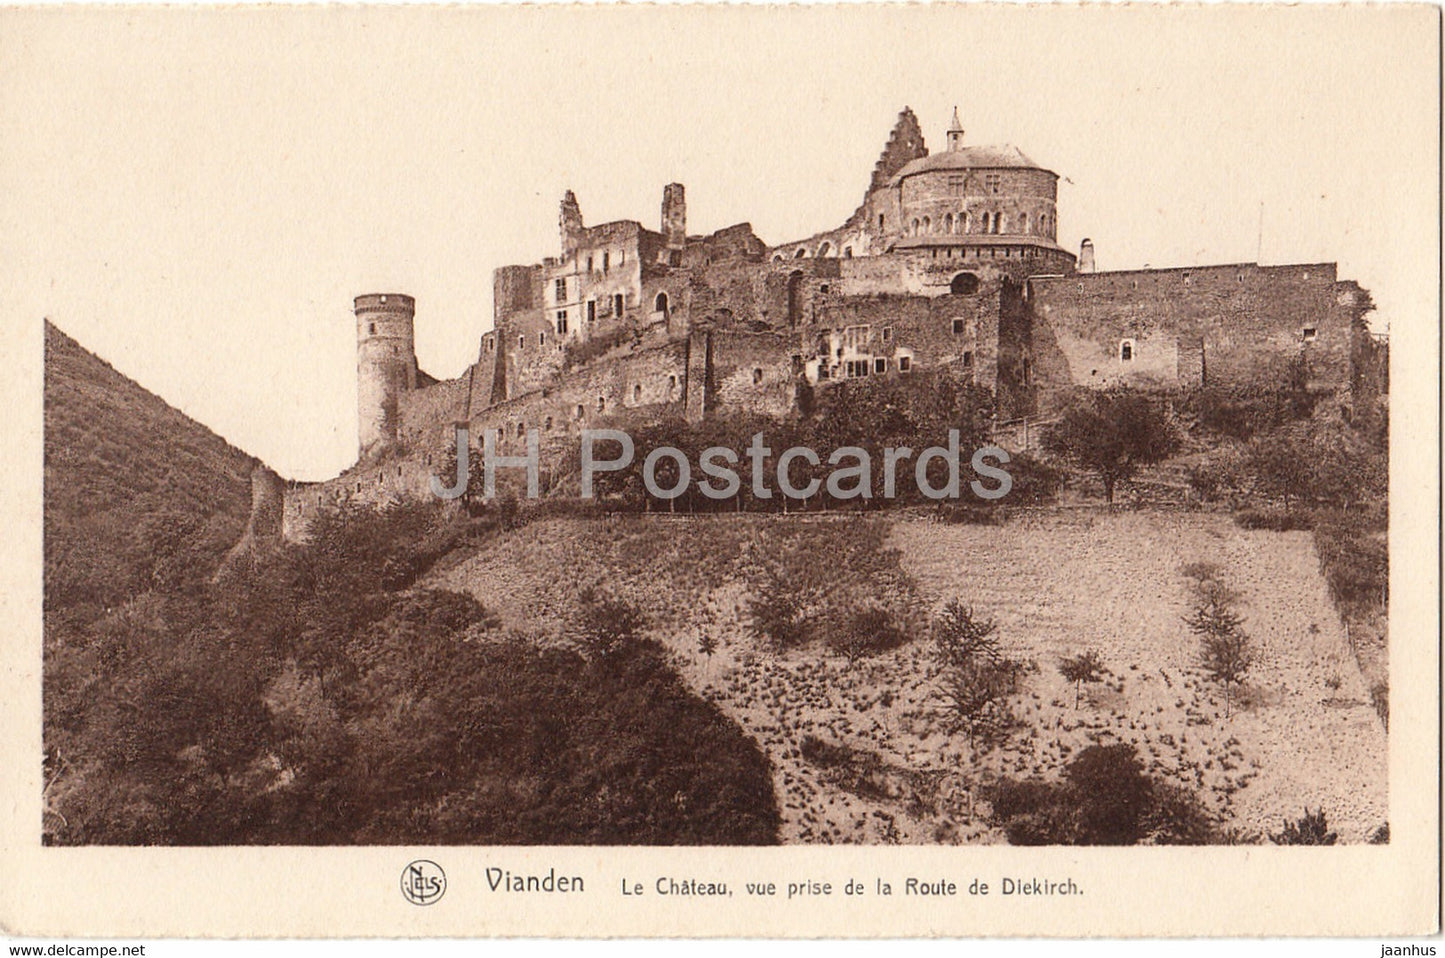 Vianden - Le Chateau - vue prise de la Route de Diekirch - castle - 27 - serie 6 - old postcard - Luxembourg - unused - JH Postcards